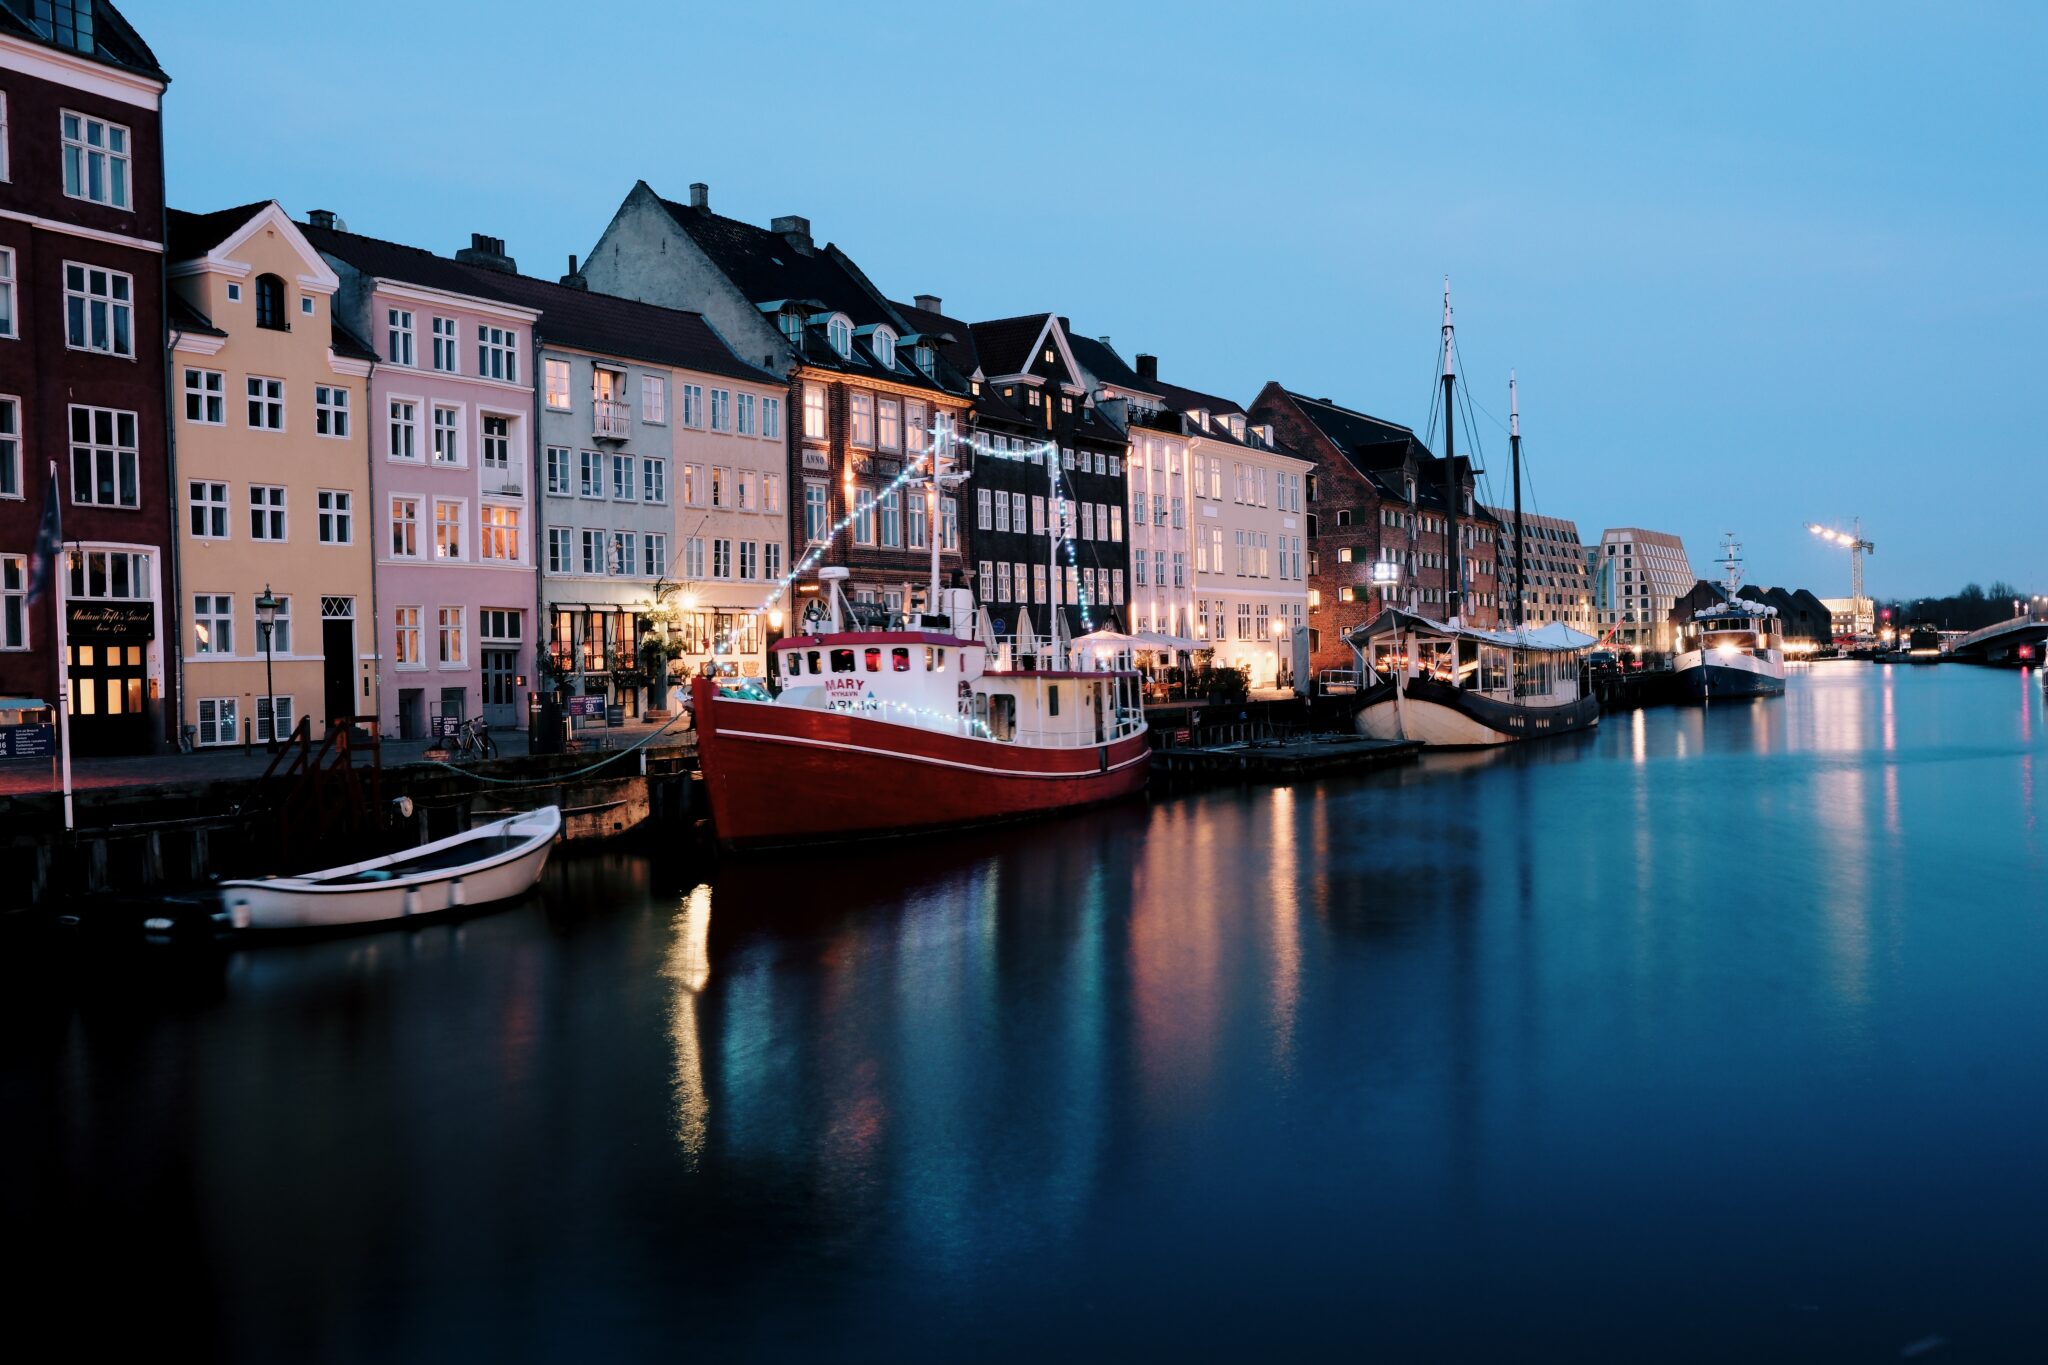 Kopenhagen-Nyhavn-Spiegelungen der bunten Häuser im Nyhavn bei Nacht